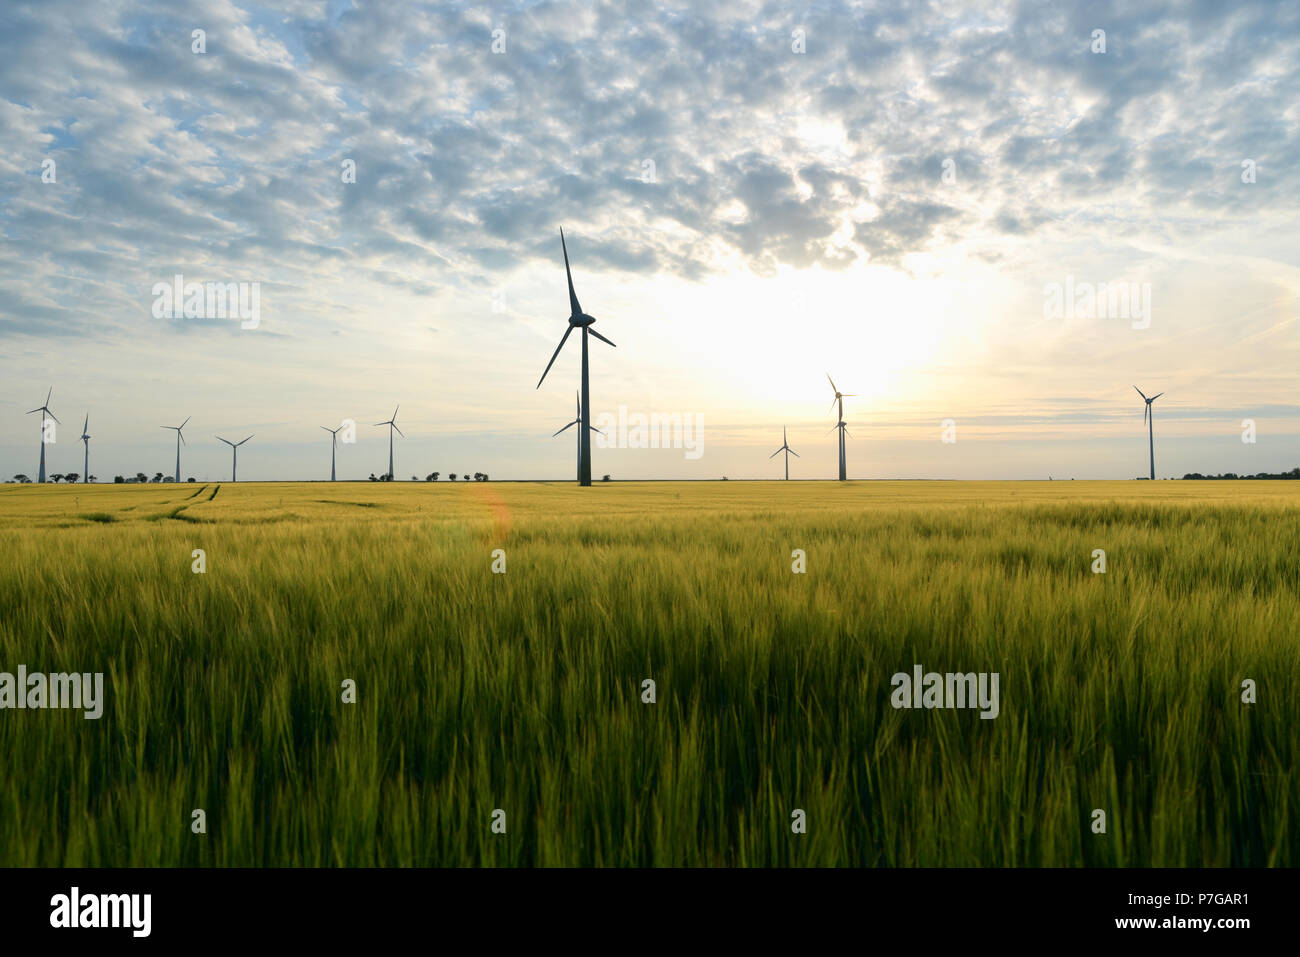 Erneuerbare Energien - Stromerzeugung mit Windkraftanlagen in einem Windpark Stockfoto